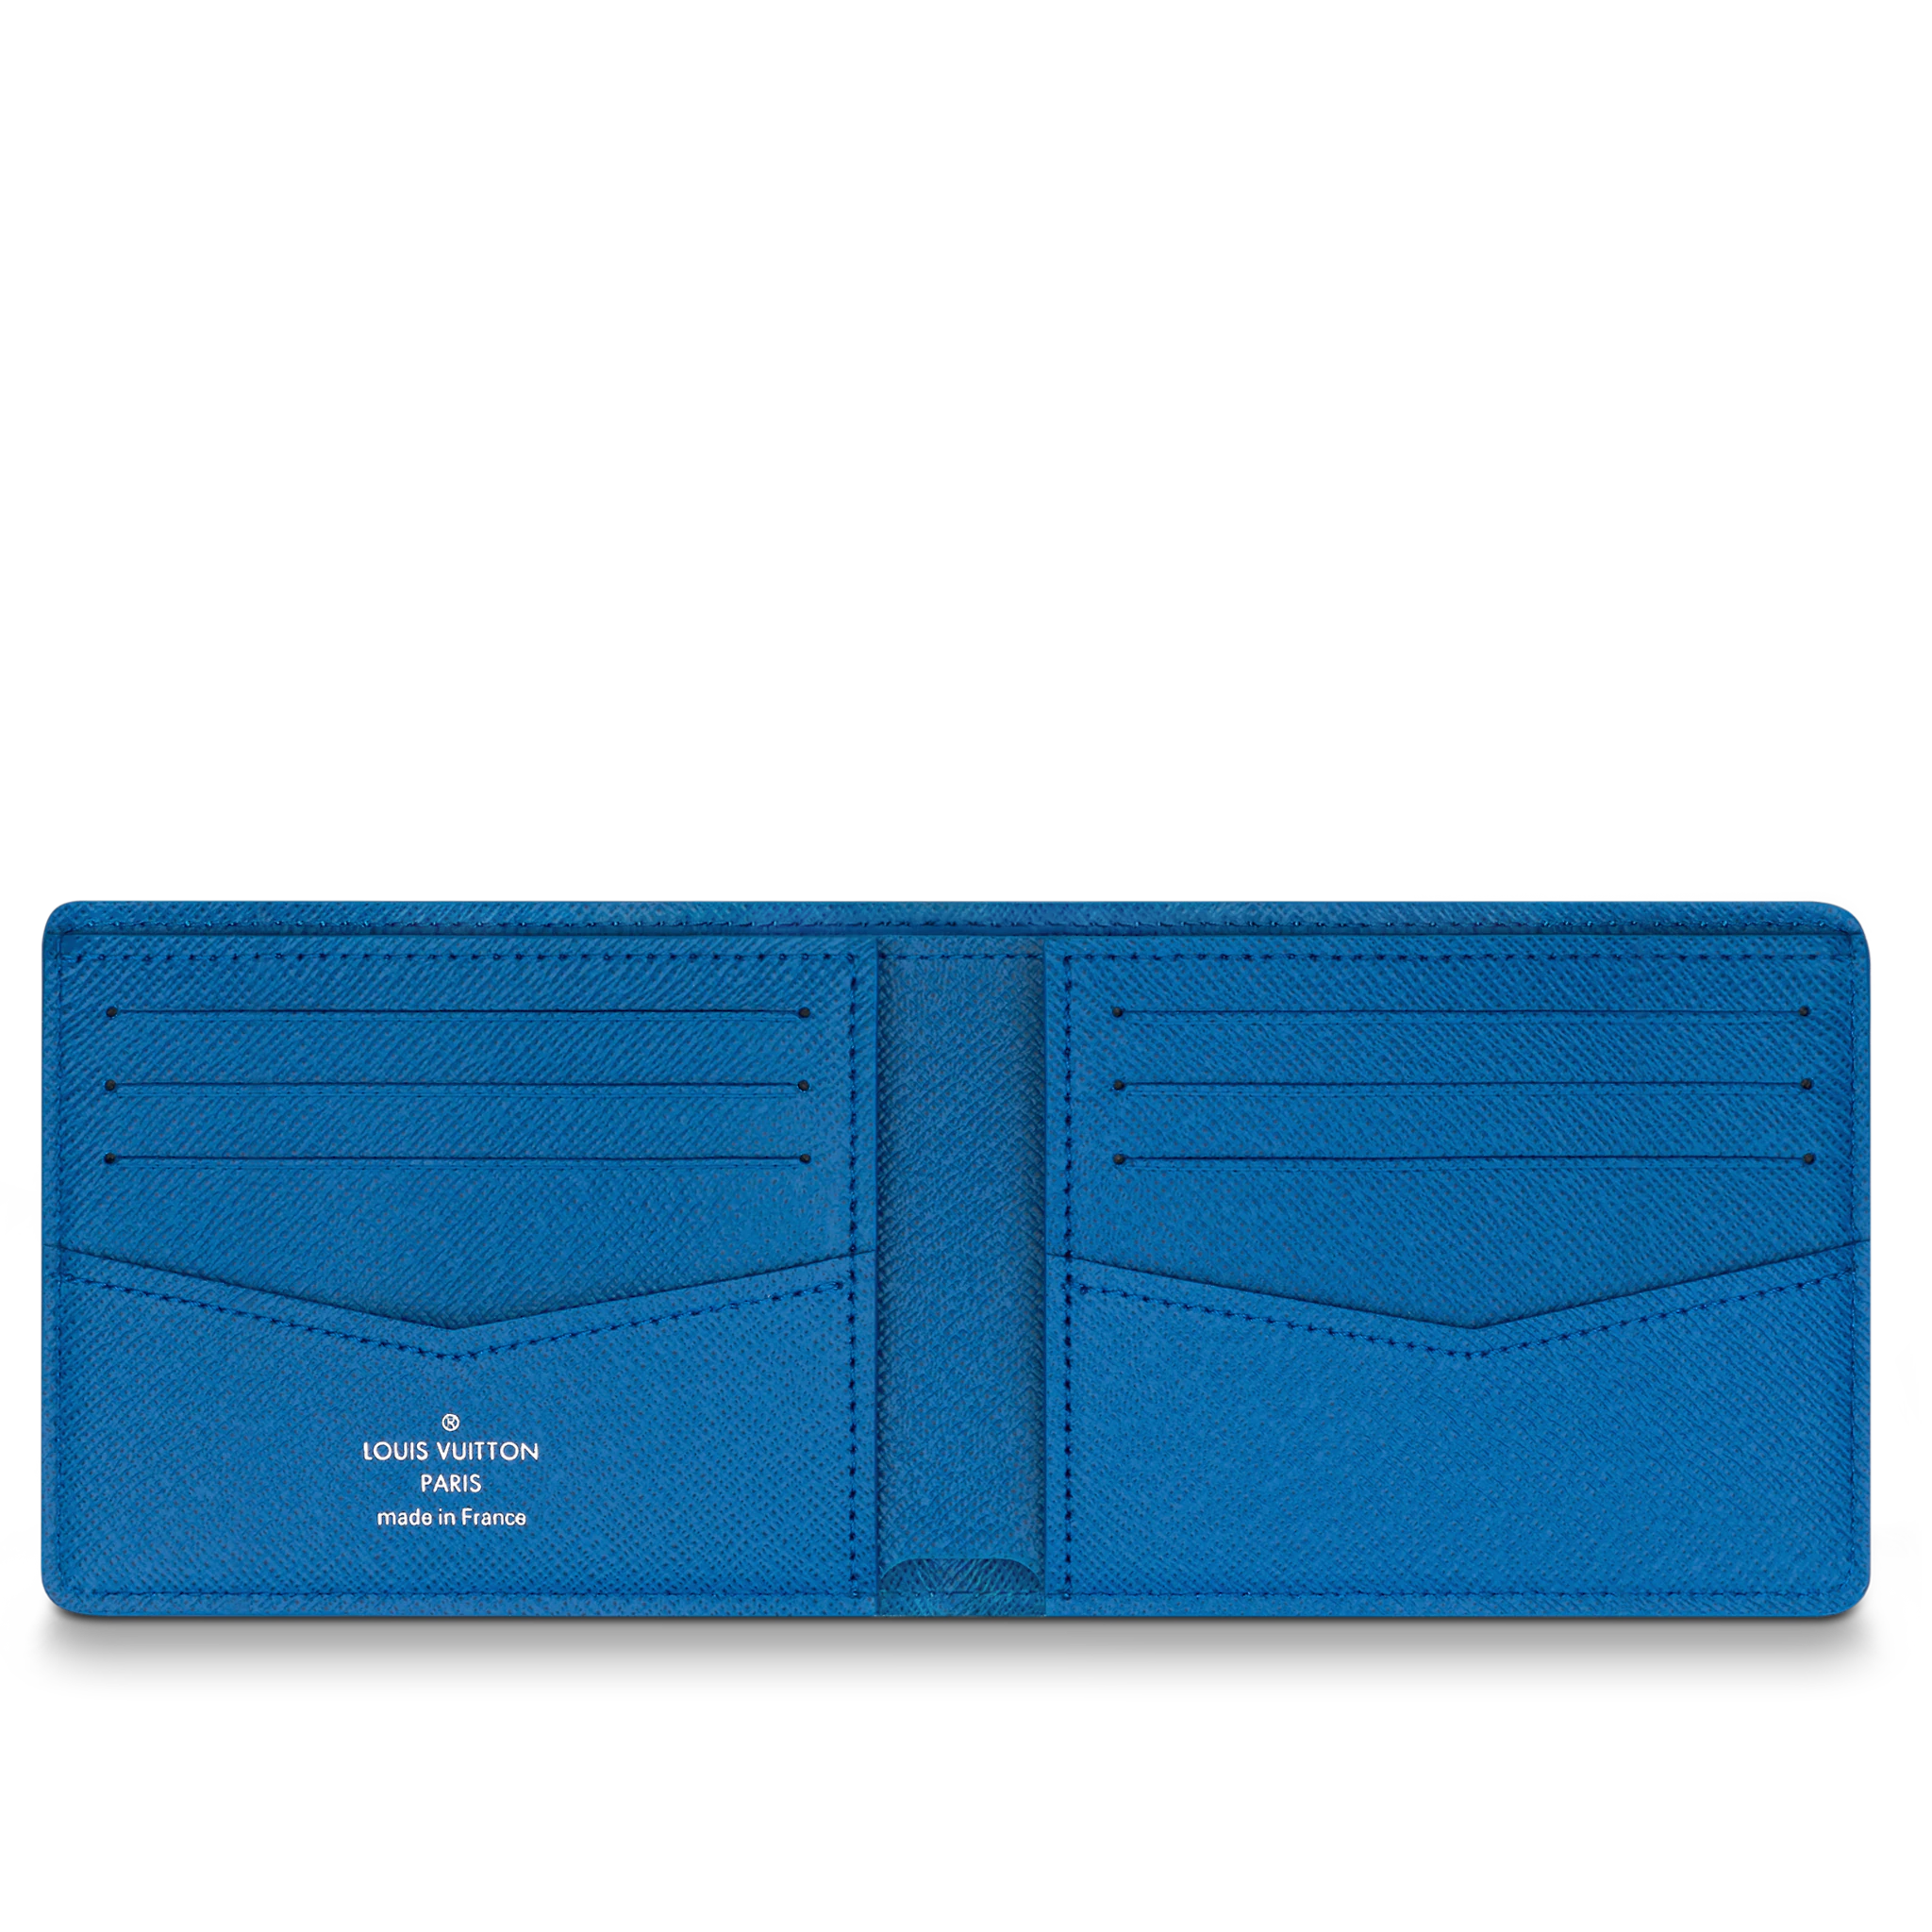 Louis Vuitton - Slender Wallet Damier Graphite Canvas - Blue